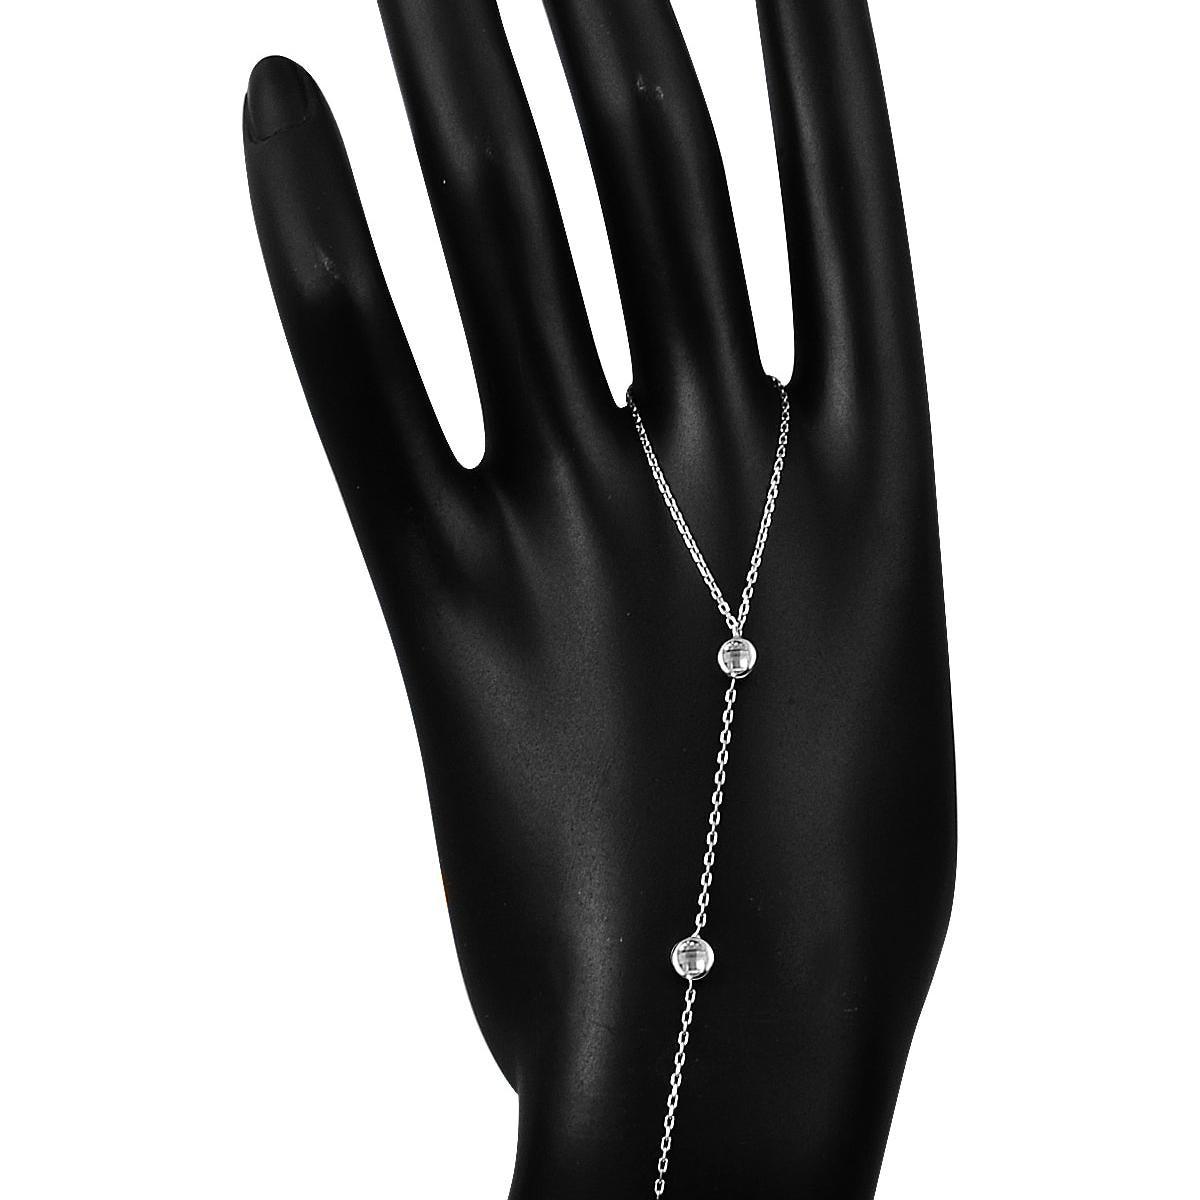 Solitaire Hand Chain Bracelett • Beaded Hand Bracelet • Gift for Wife - Trending Silver Gifts